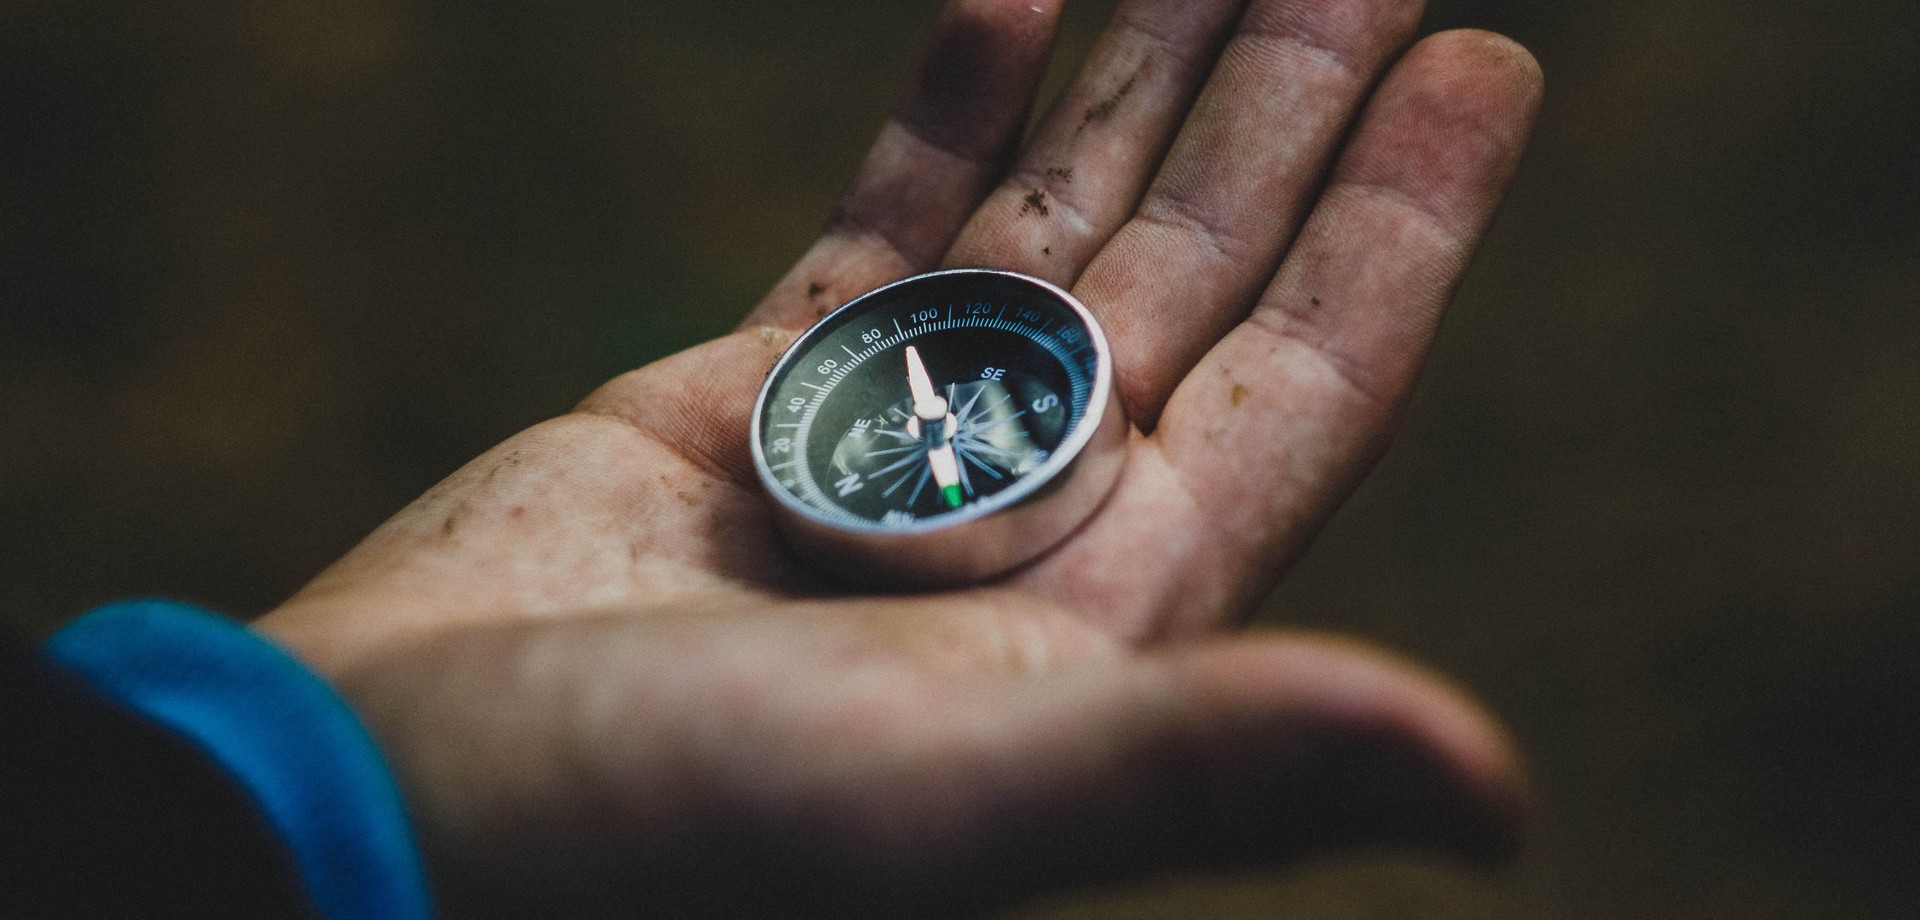 Das Bild zeigt einen Kompass in einer Handfläche. ©Pexels / Pixabay